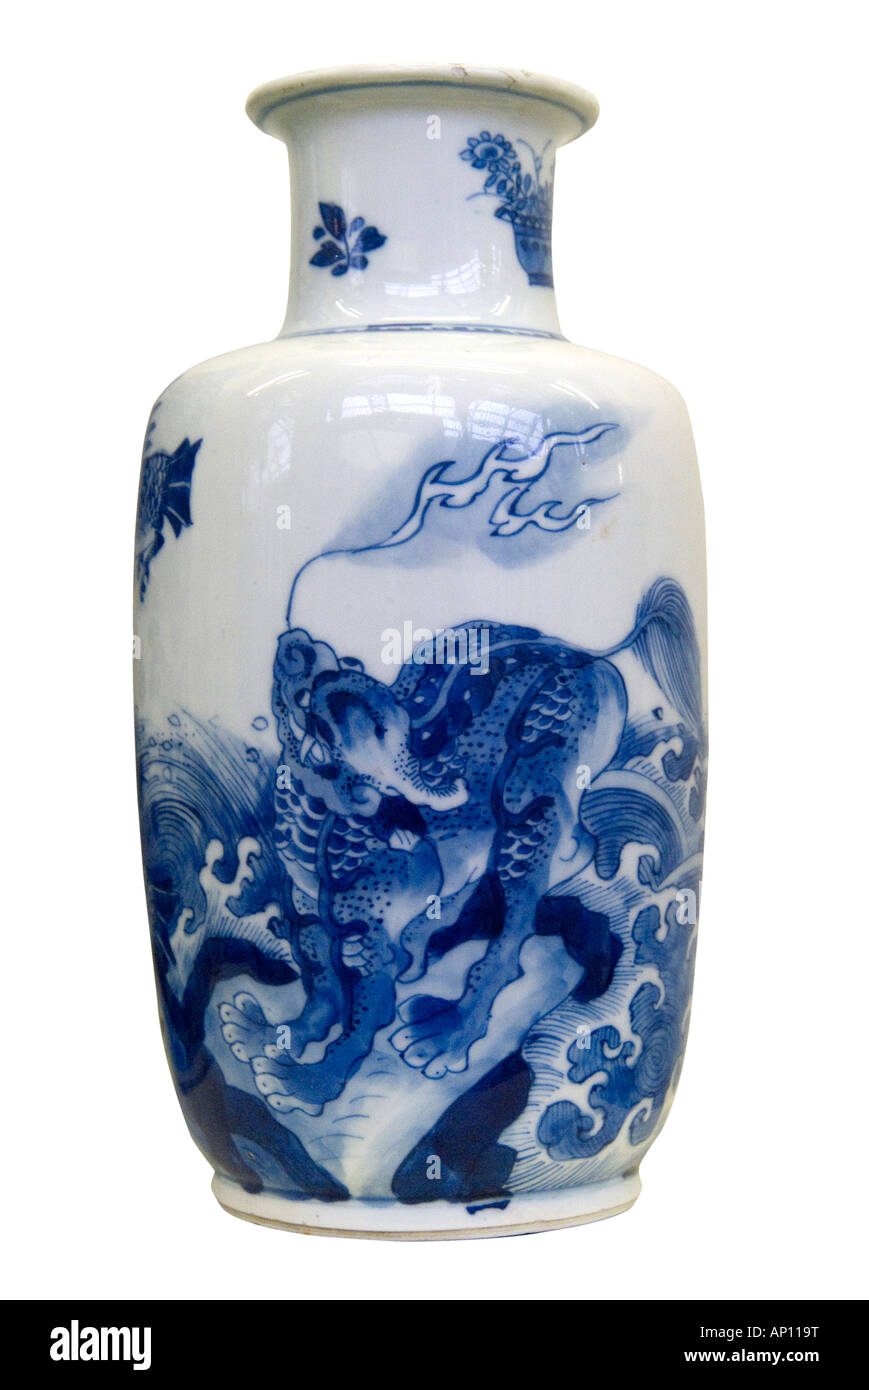 Ming-Dynastie Drachen Vase Porzellankeramik chinesische Feuer heftige Symmetrie Gleichgewicht Gnade Harmonie Nordost China Asien Asiatische Manchuri Stockfoto